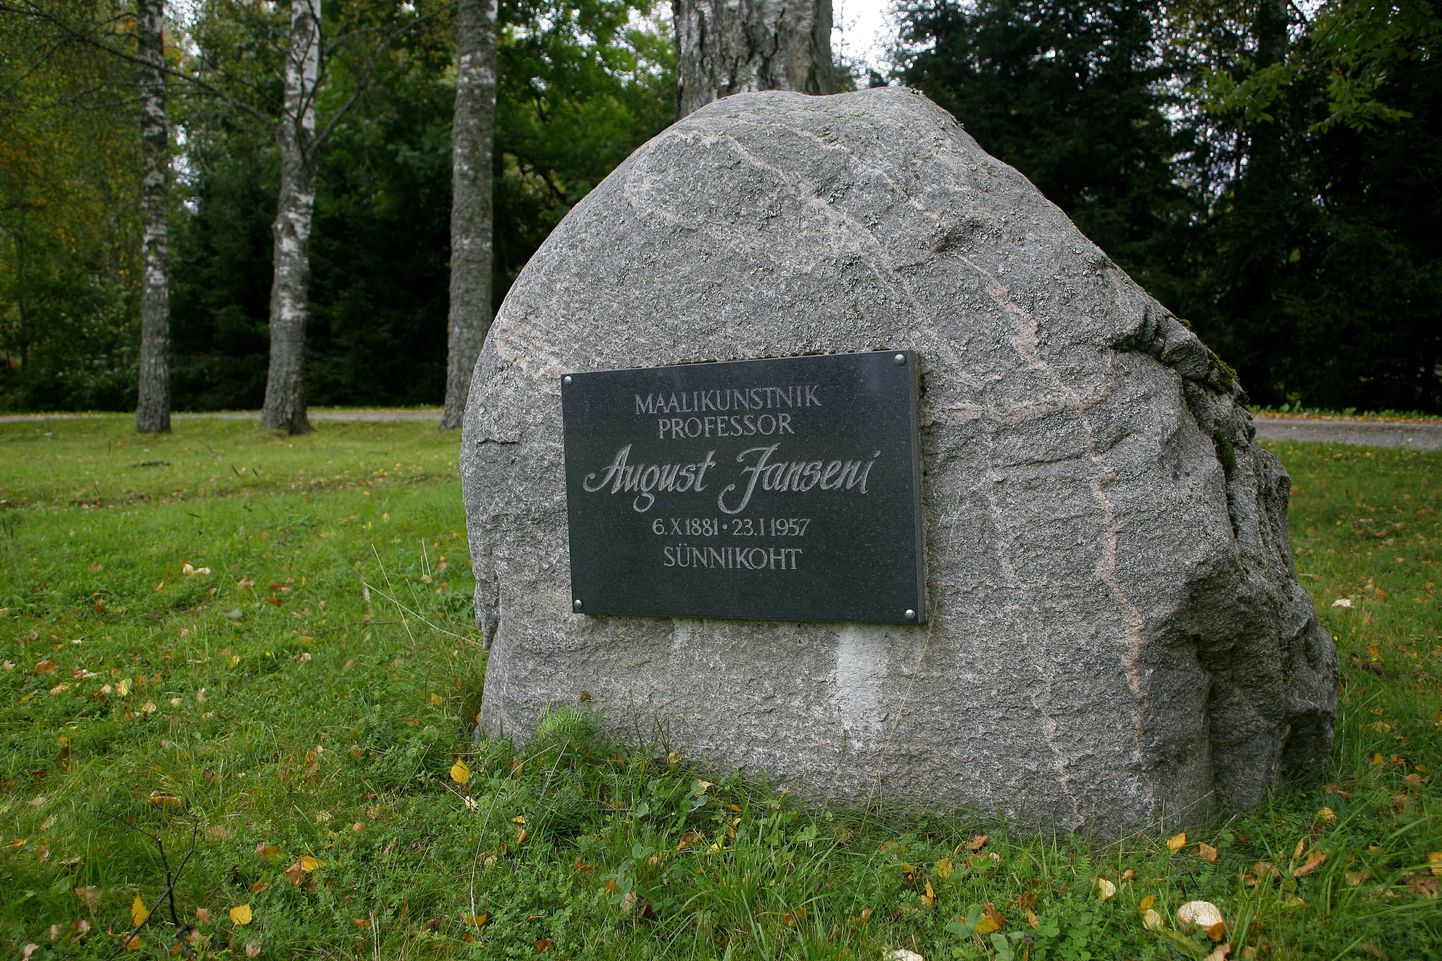 Saarde valla üks mälestusmärk tähistab 
August Janseni sünnikohta.